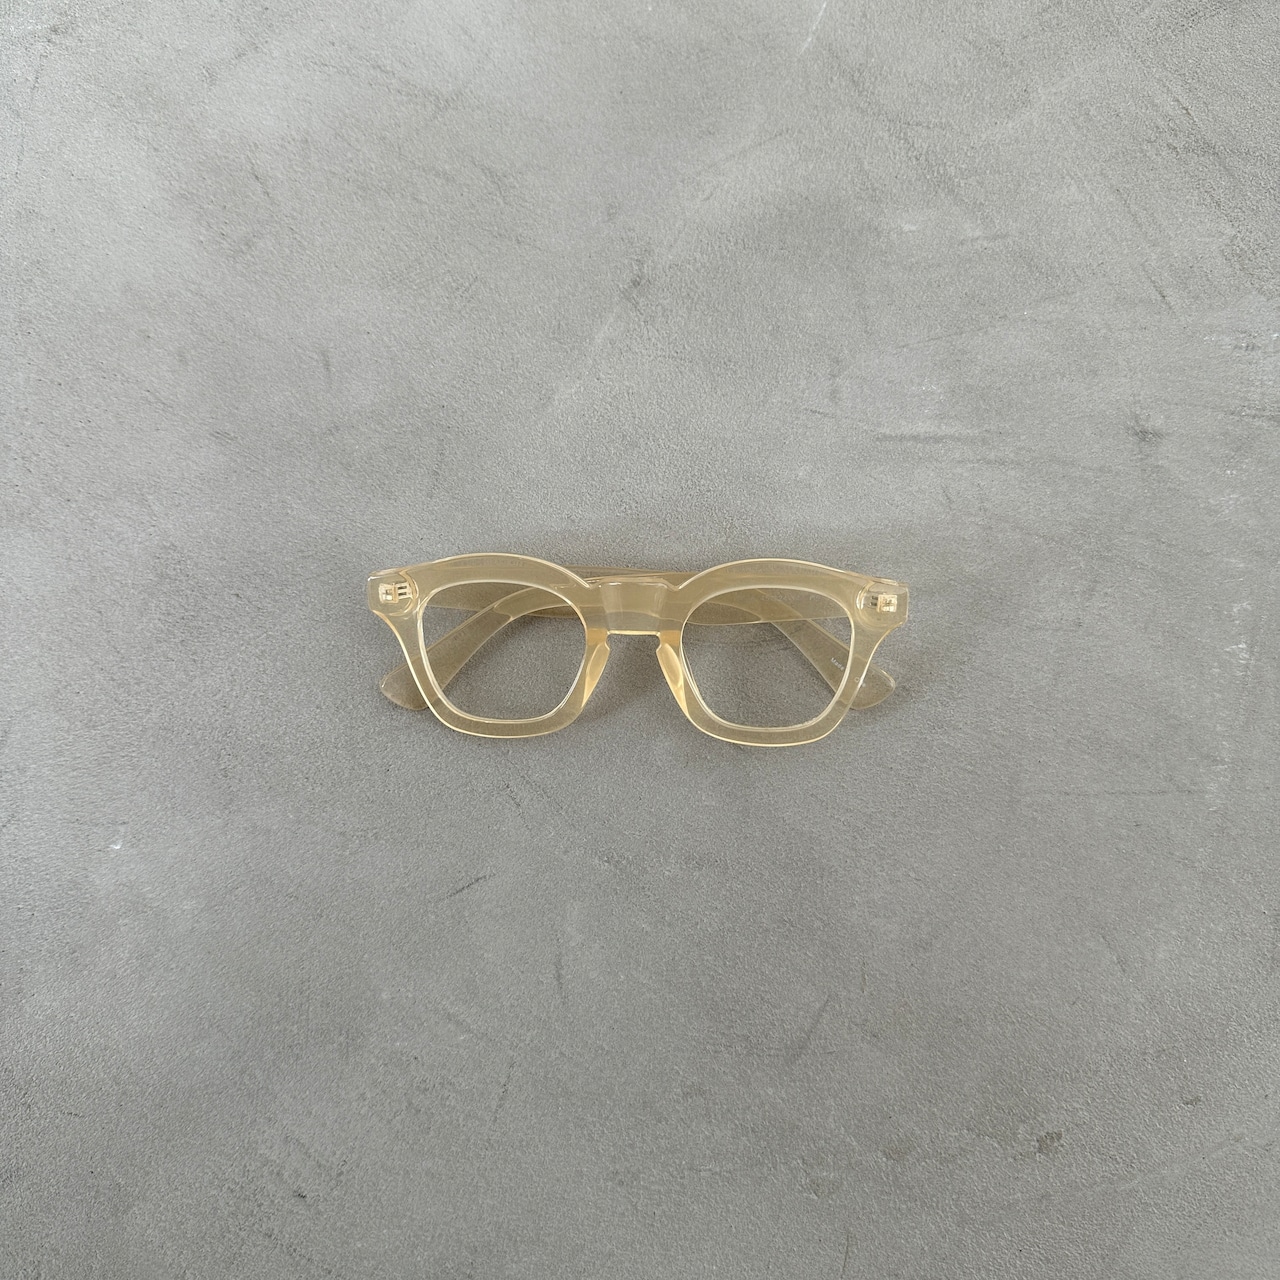 wide frame sunglasses/nudie